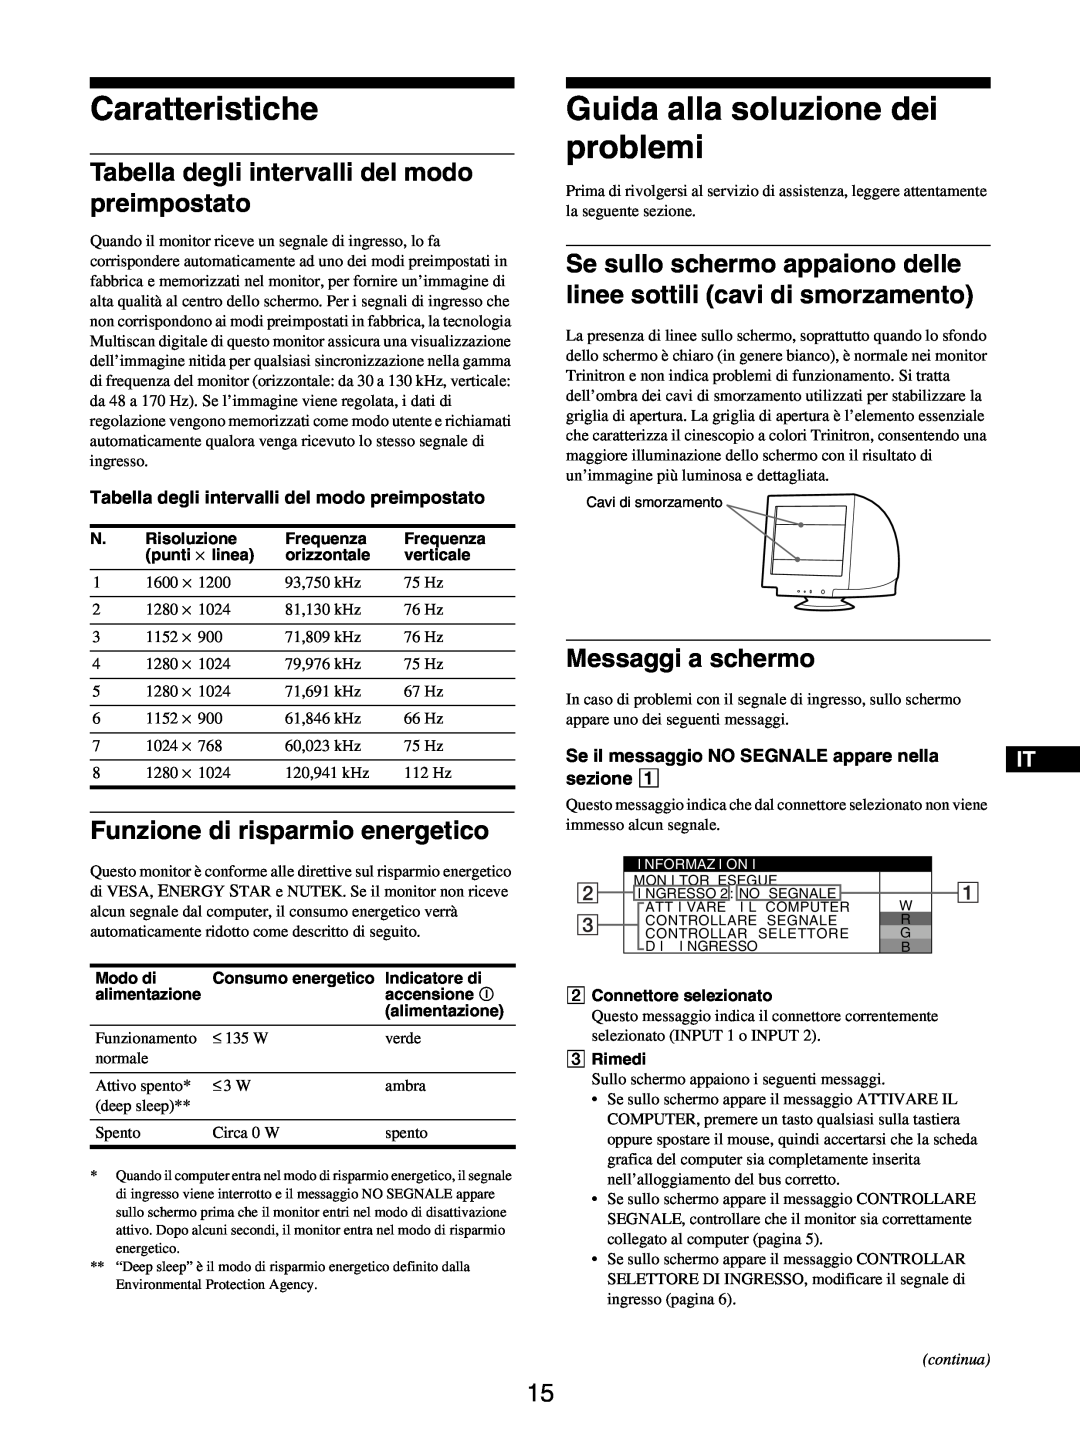 Sony GDM-5510 Caratteristiche, Guida alla soluzione dei problemi, Tabella degli intervalli del modo preimpostato, sezione 